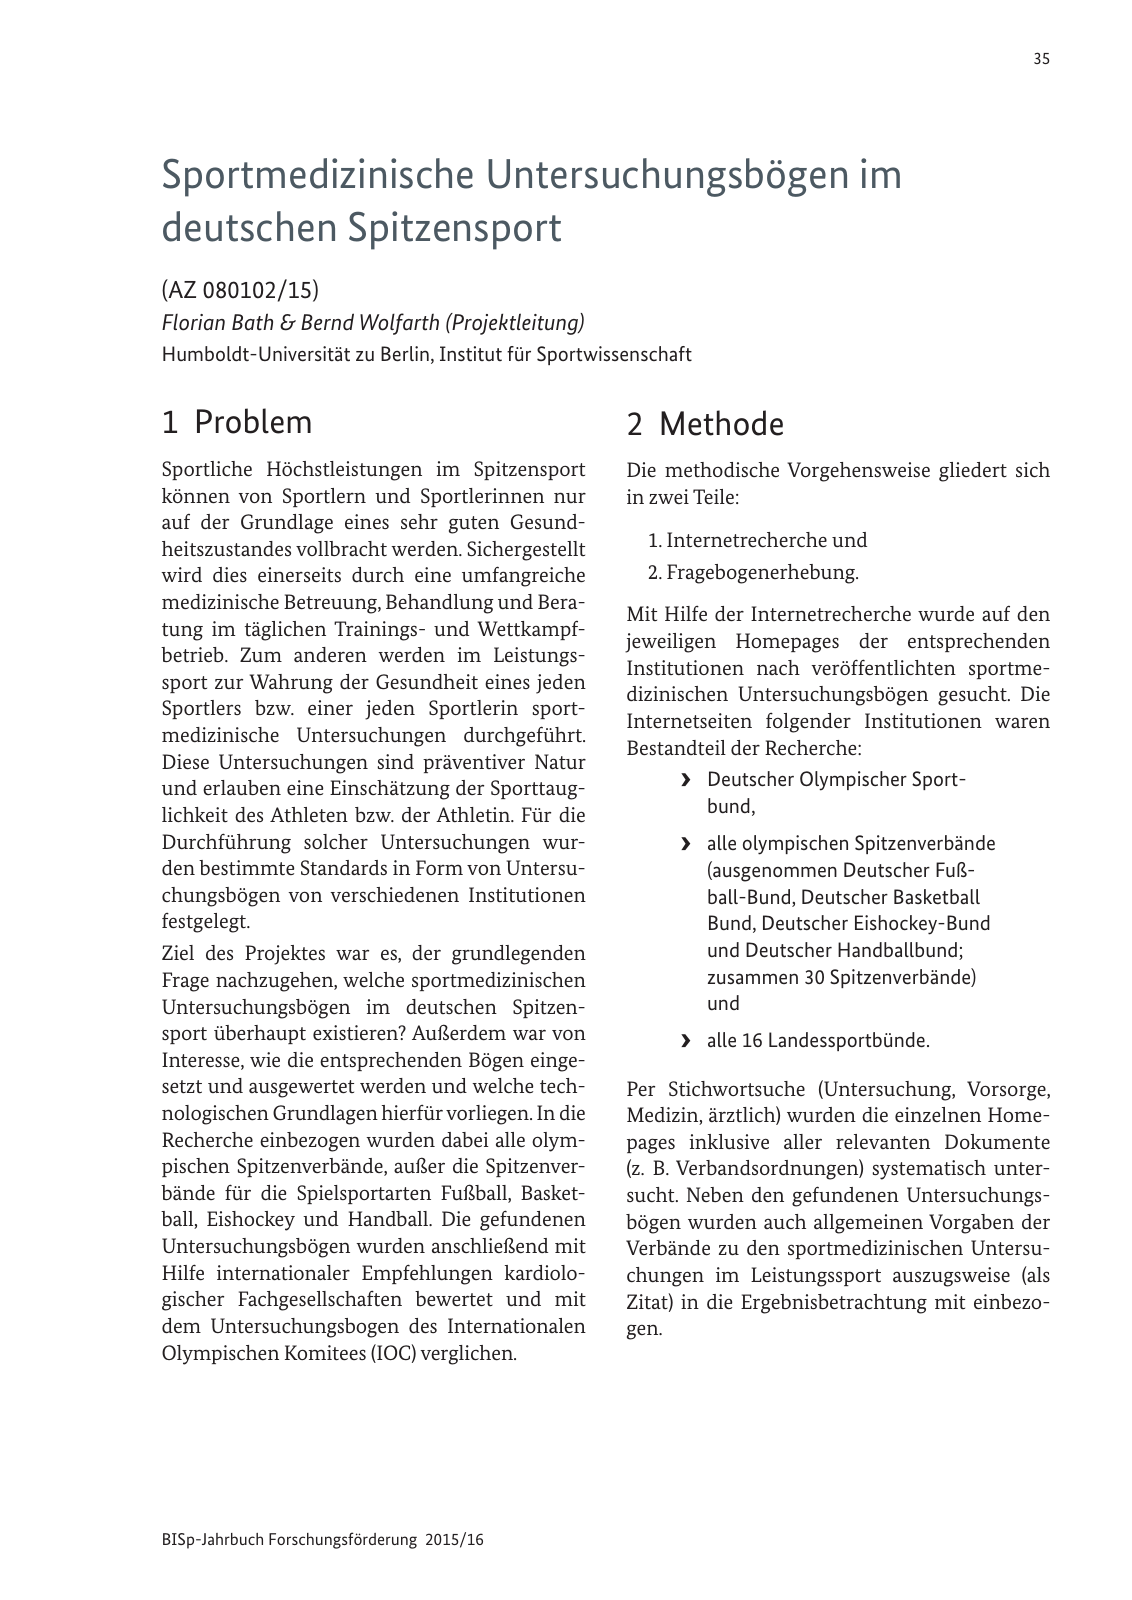 Vorschau BISp-Jahrbuch Forschungsförderung 2015/16 Seite 37